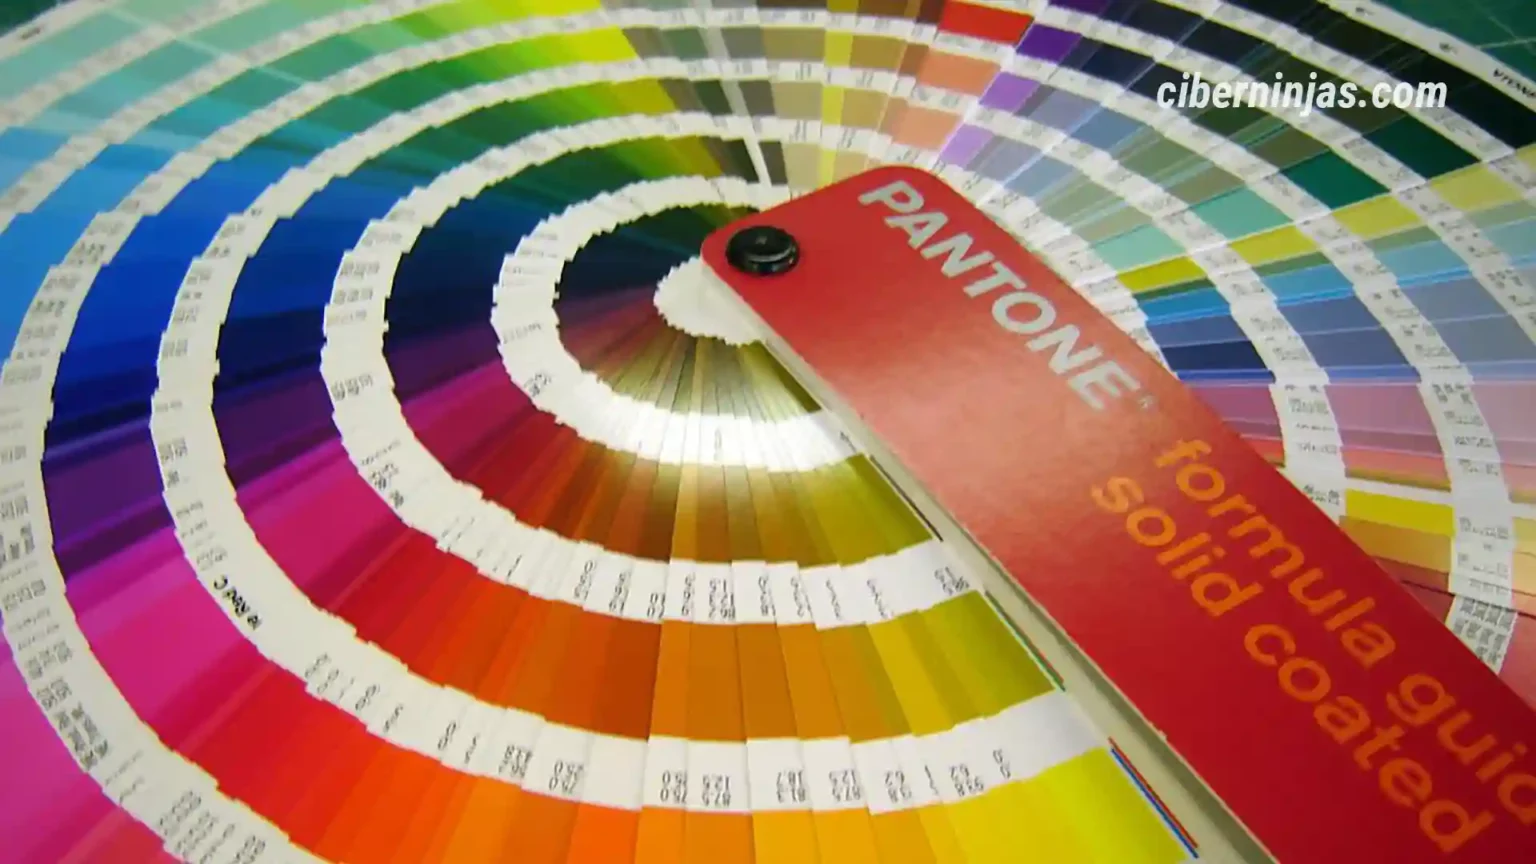 Pantone quiere cobrar 15 dólares al mes por usar sus colores en Photoshop